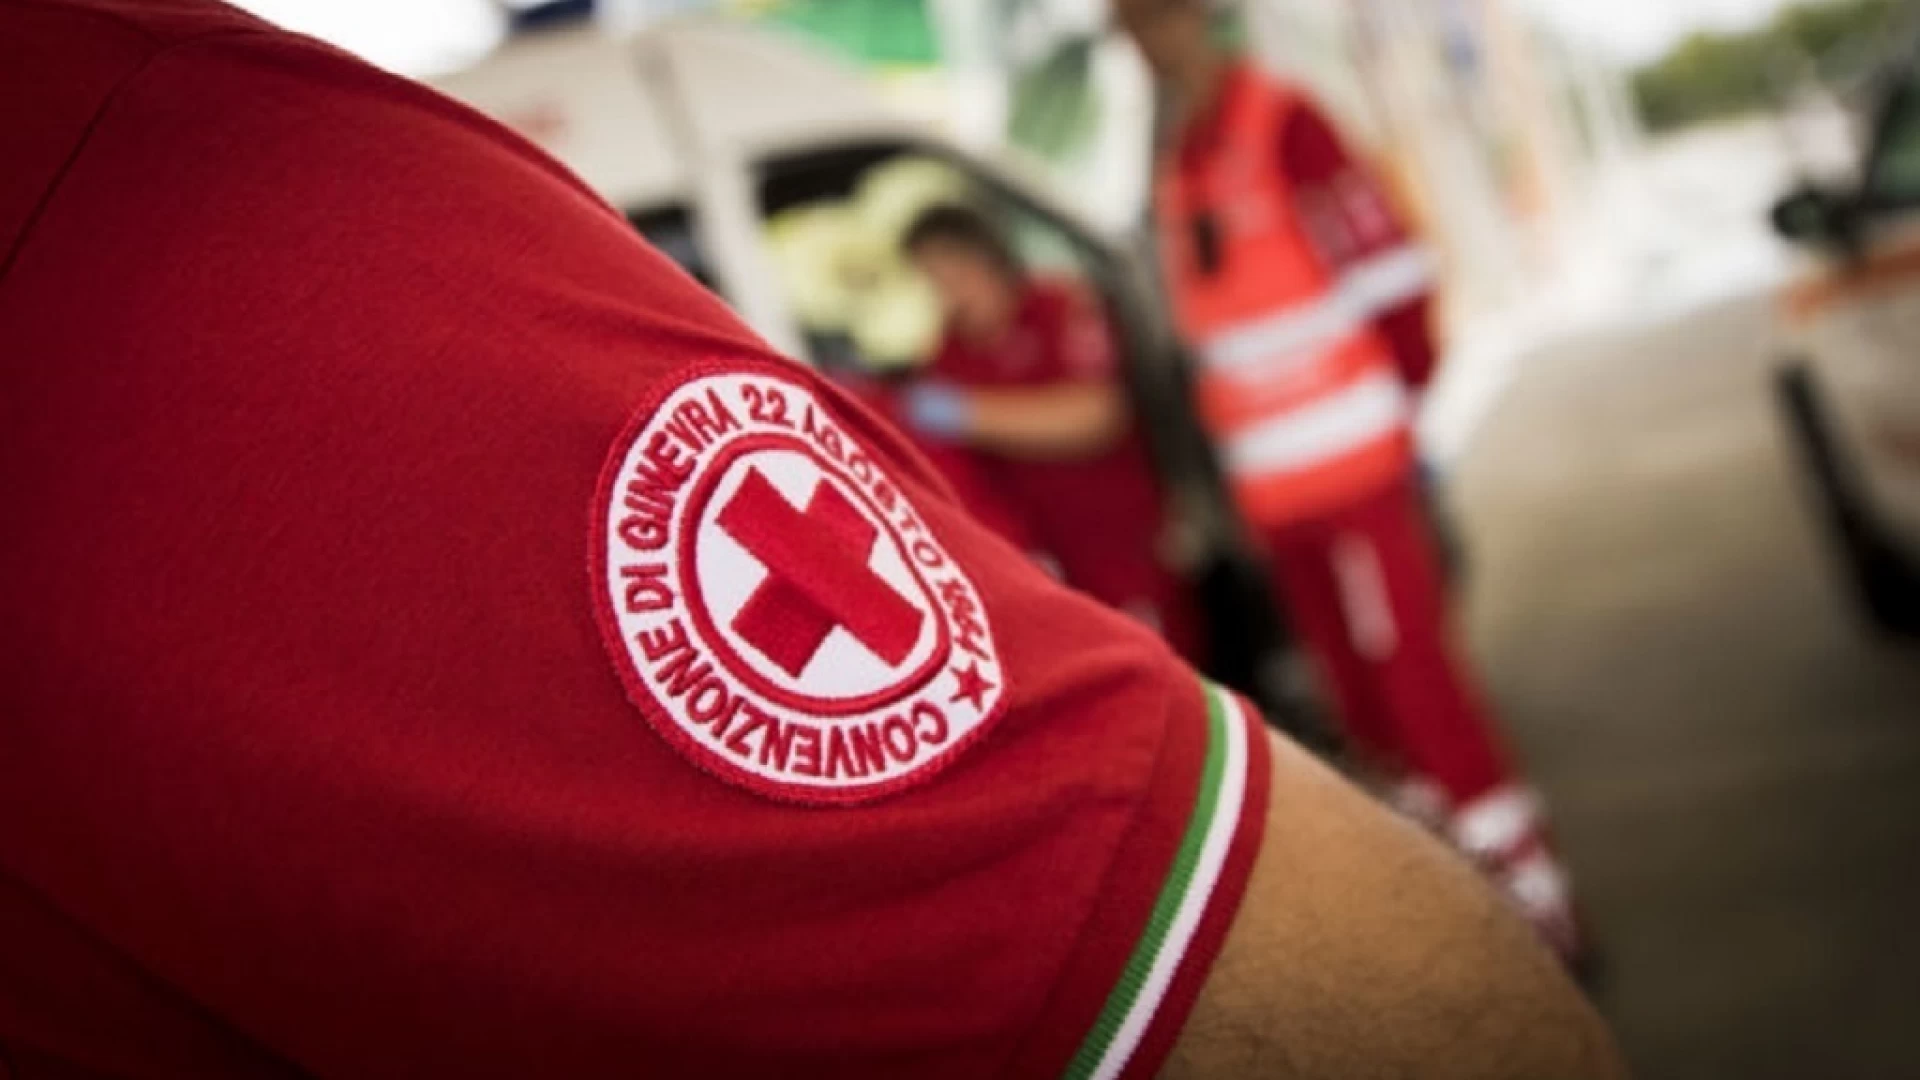 Rocchetta a Volturno, venerdì 28 agosto i test sierologici per i cittadini a cura della Croce Rossa Italiana.